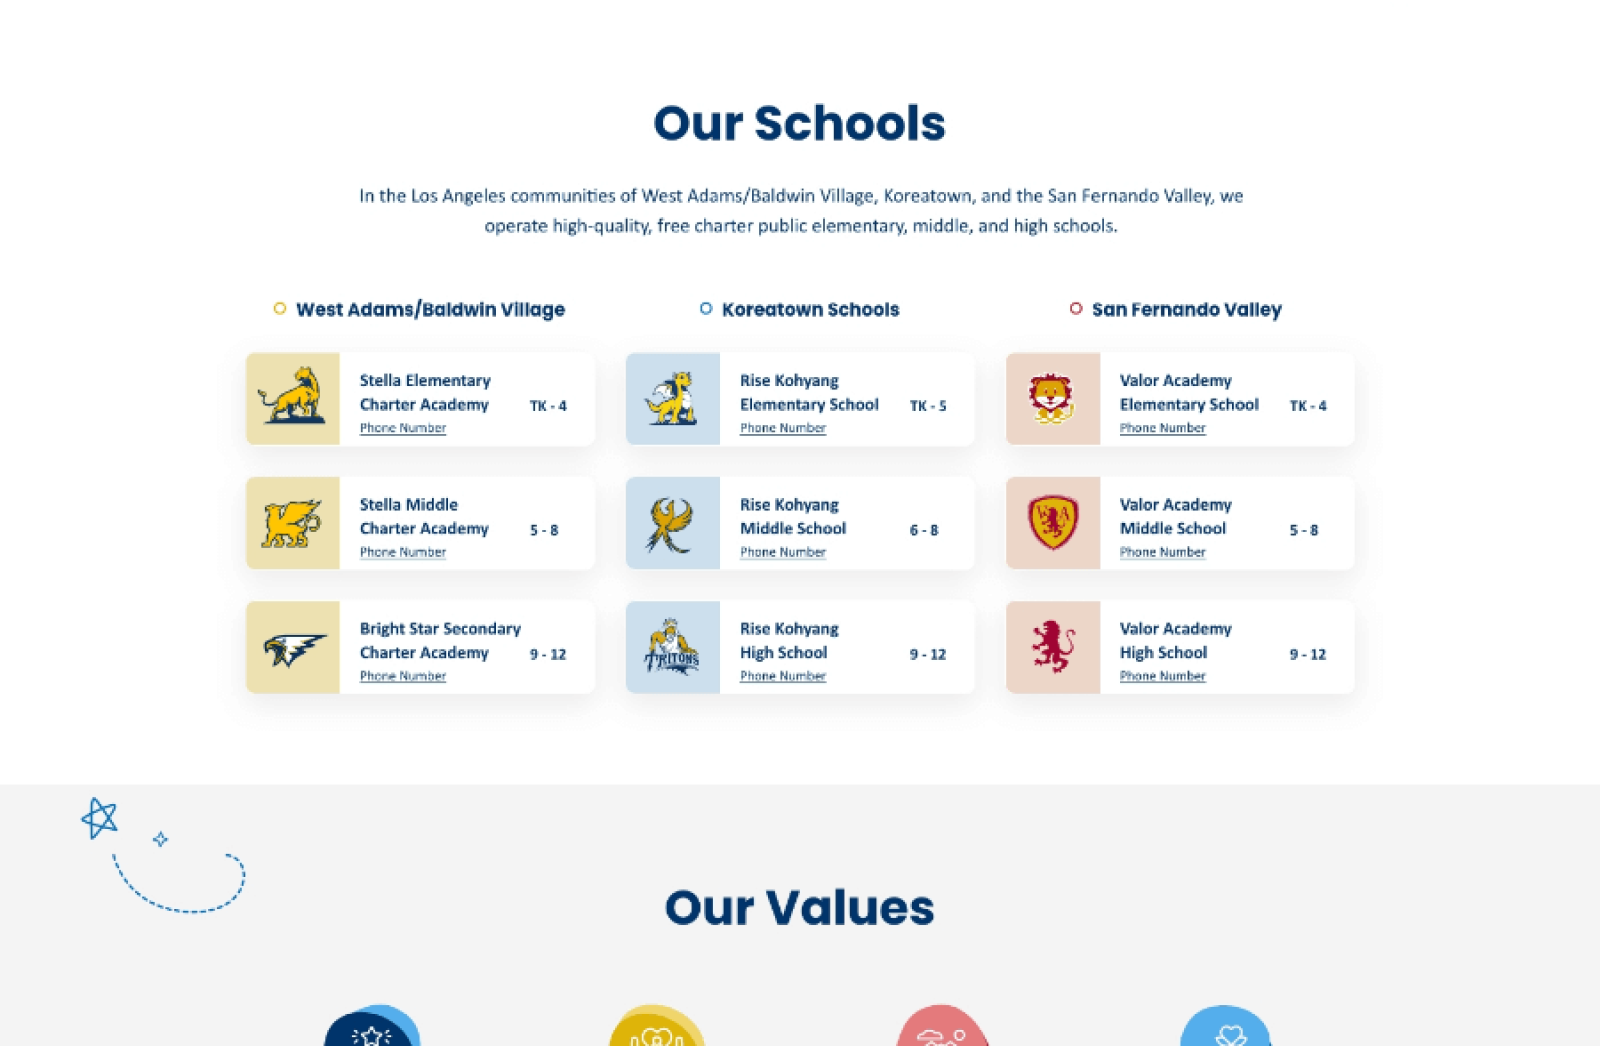 A screenshot of Bright Star Schools' new website